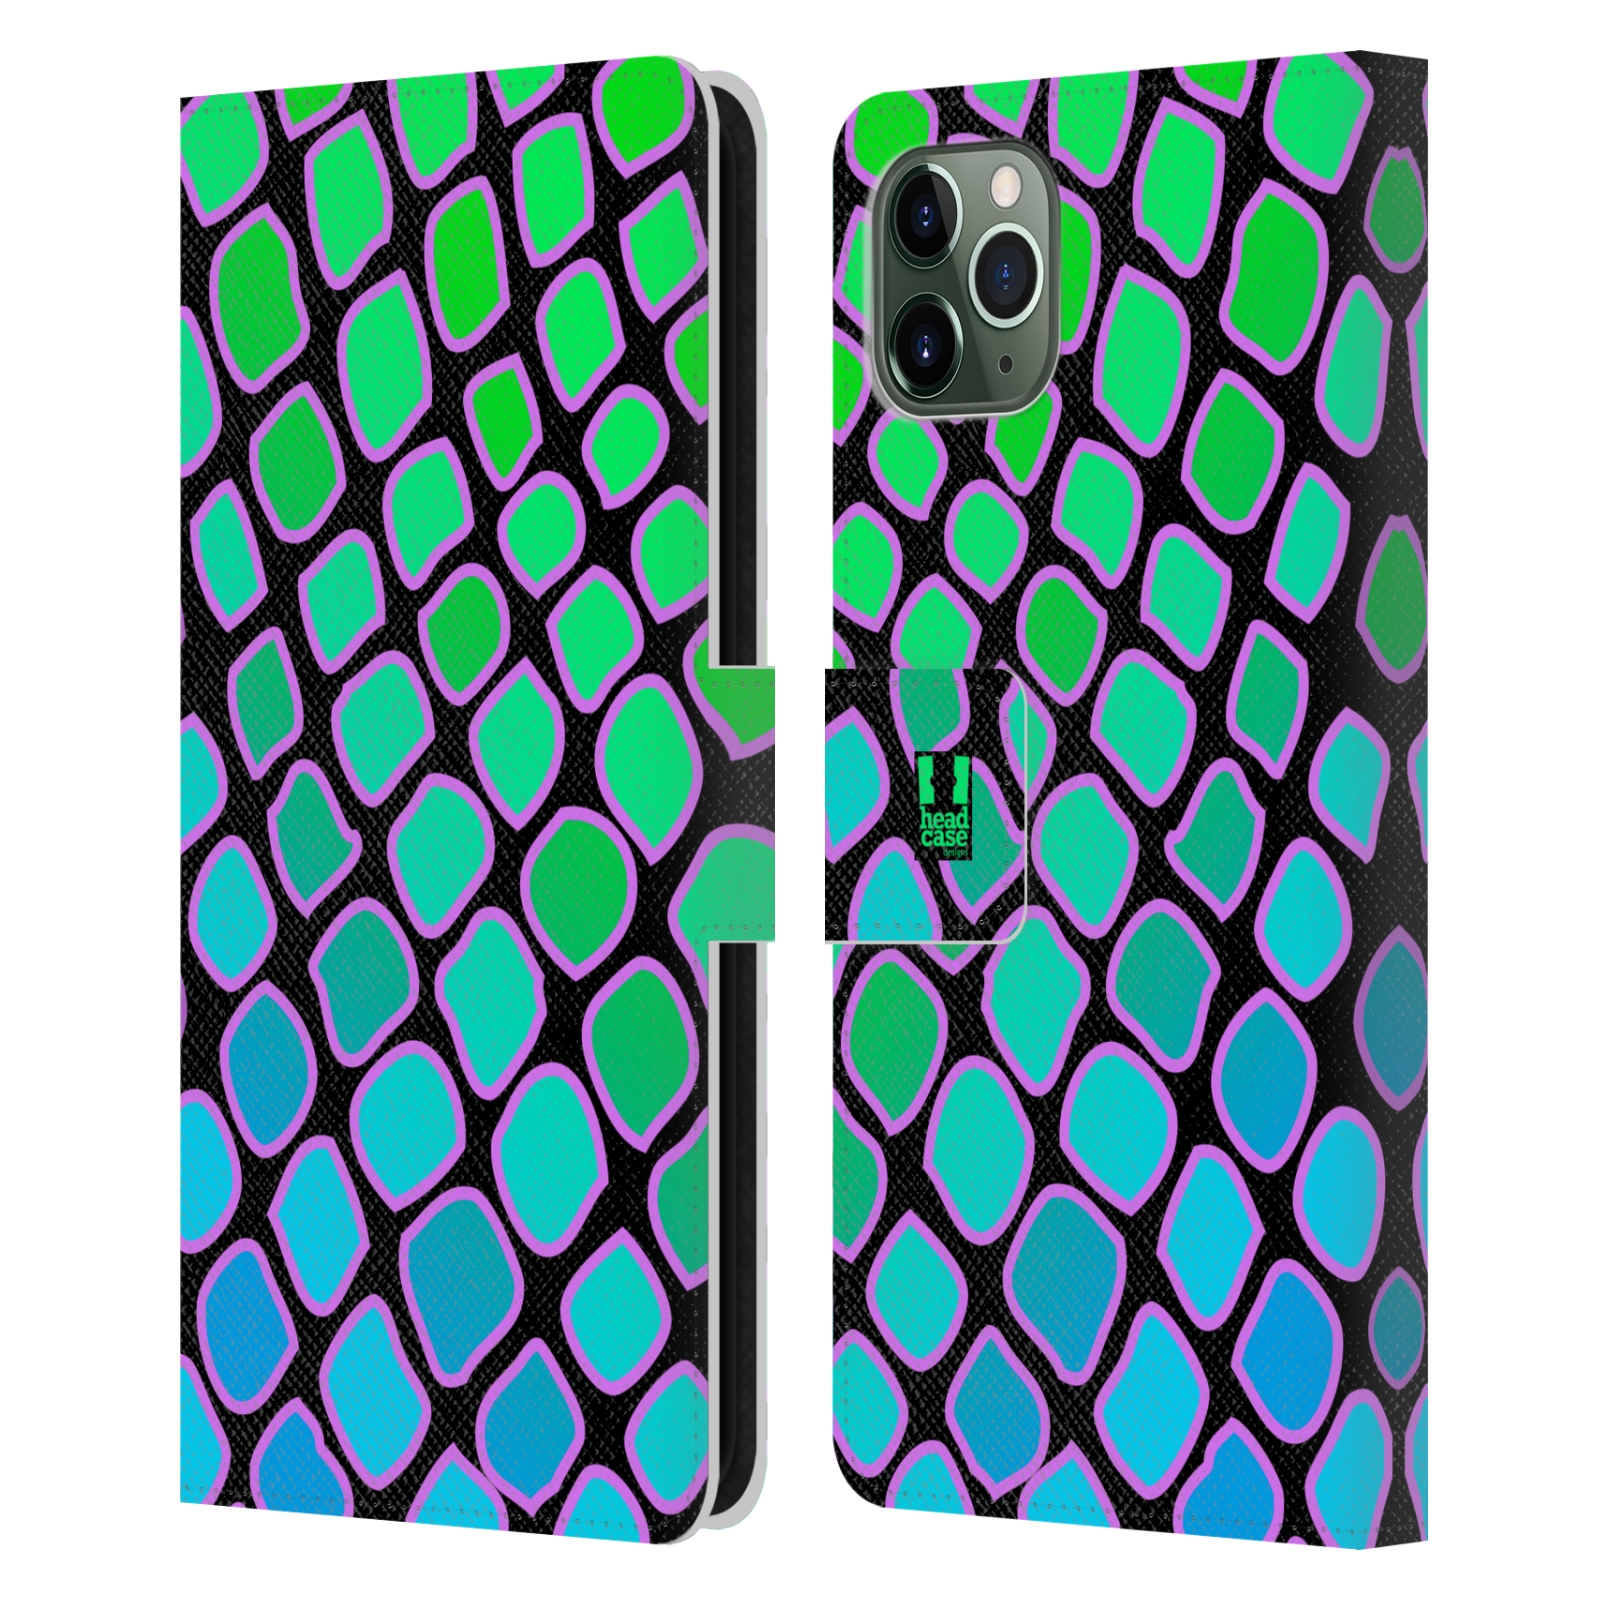 Pouzdro na mobil Apple Iphone 11 PRO MAX Zvířecí barevné vzory vodní had modrá a zelená barva AQUA